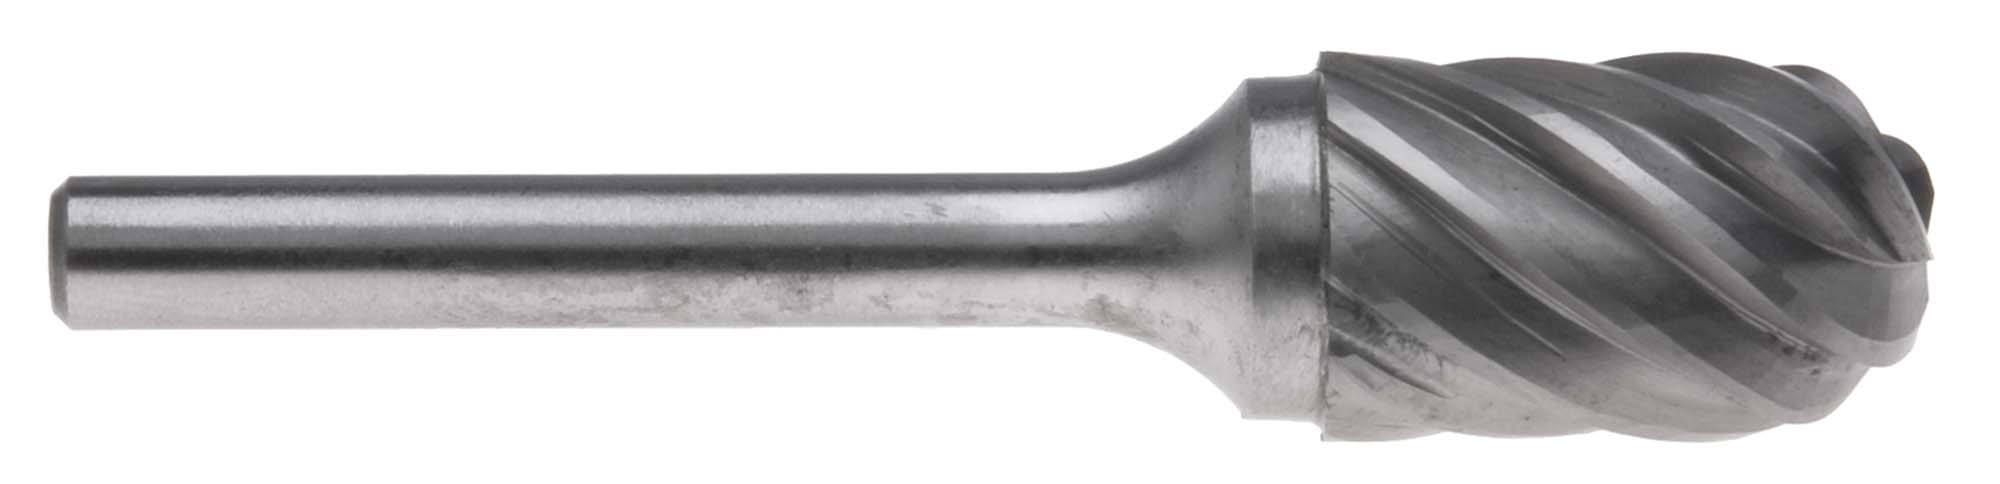 SC-1AL 1/4" Style C 1/4" Shank Carbide Burr for Aluminum